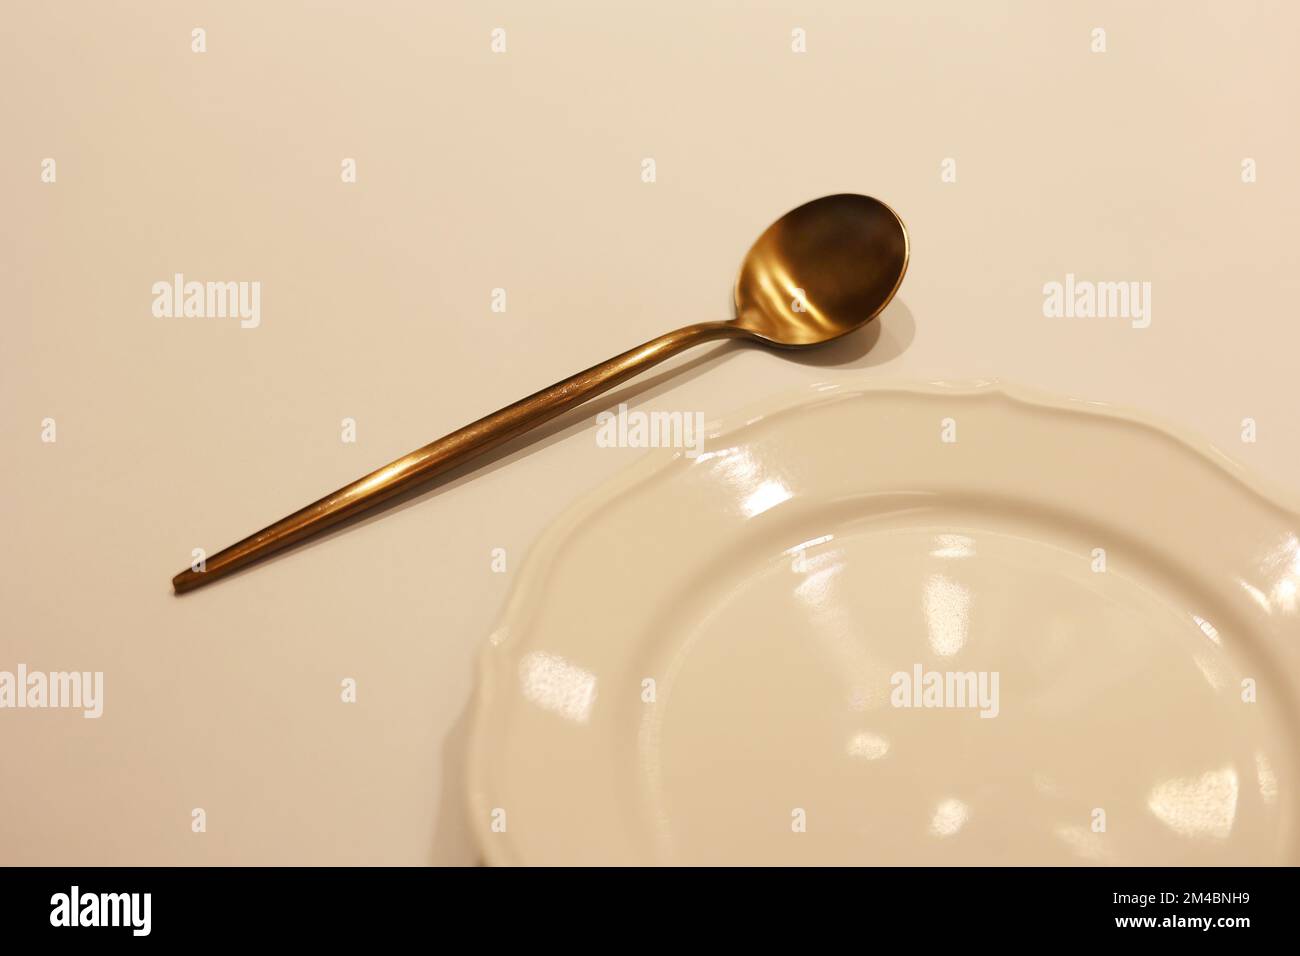 Une cuillère en laiton coréen avec un plat blanc vide sur la table, la  cuillère sur le plat Photo Stock - Alamy